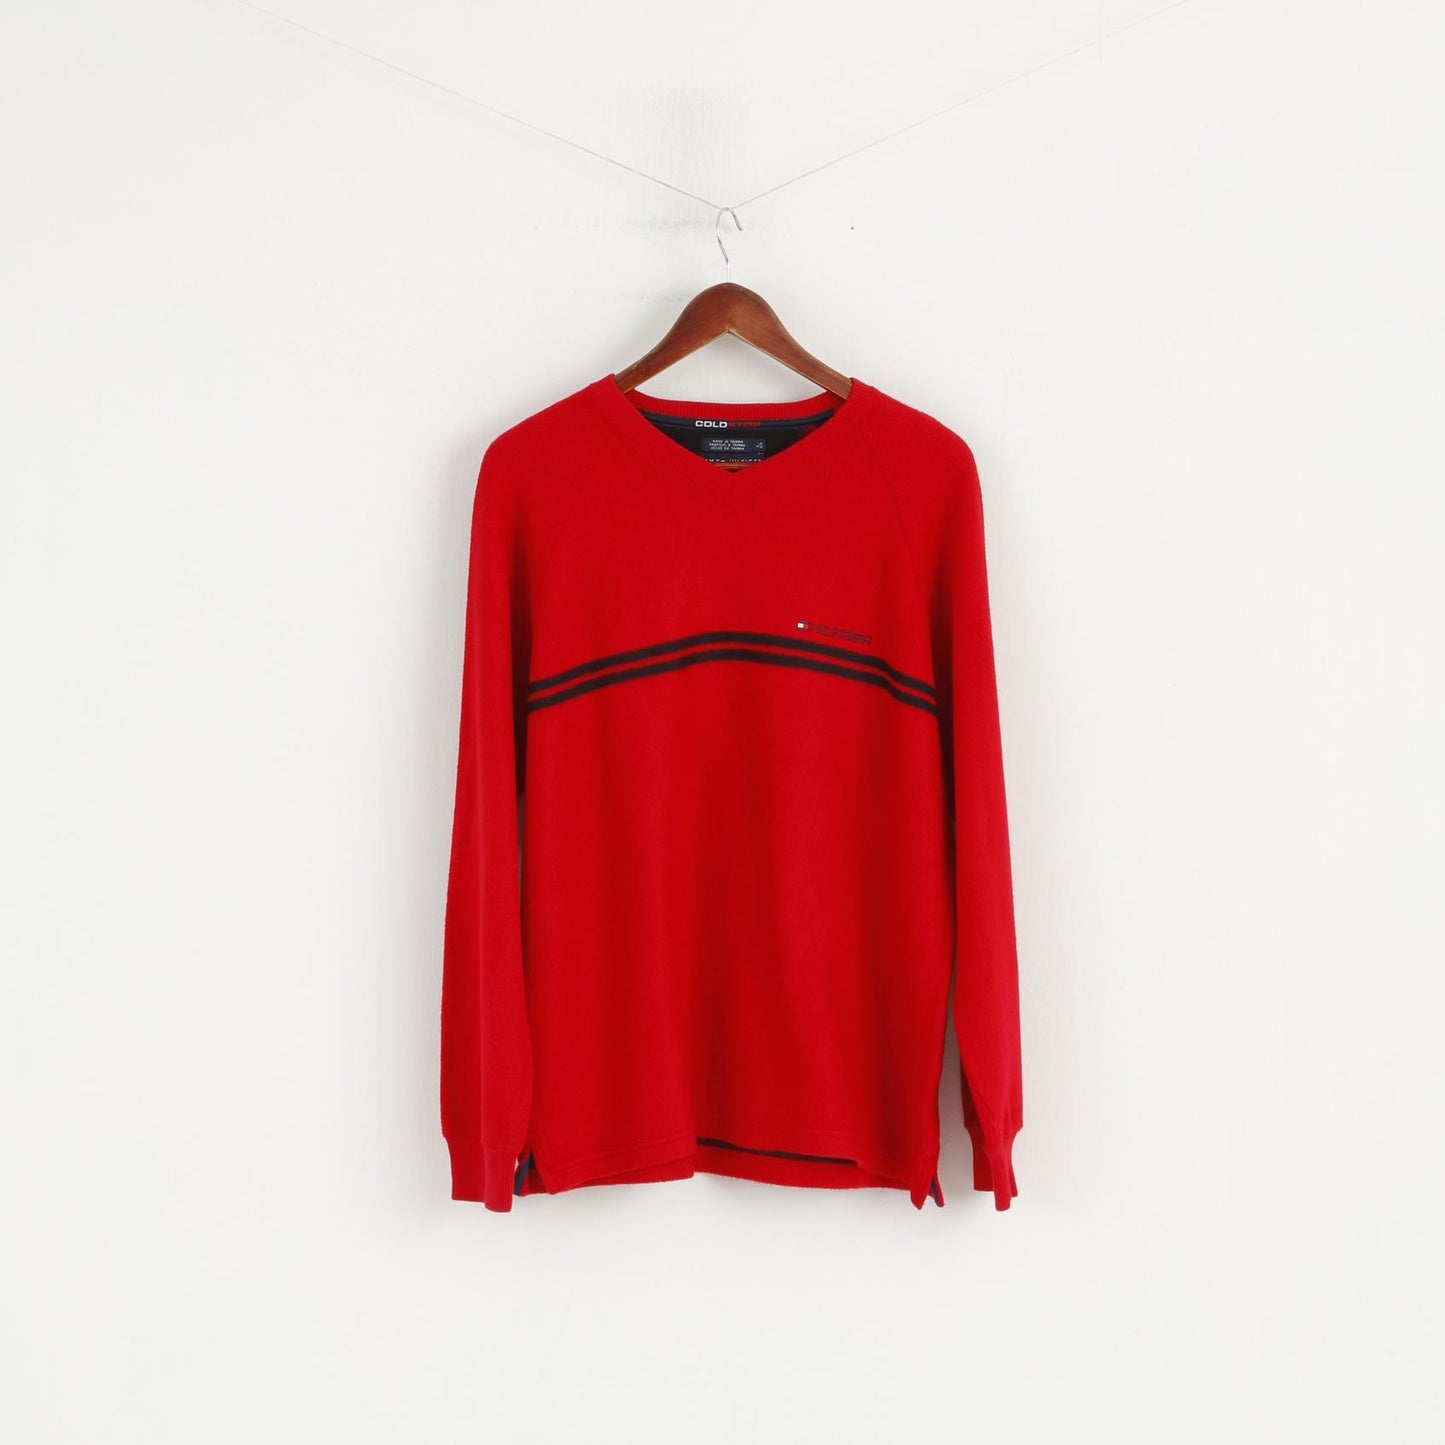 Tommy Hilfiger Men L Jumper Red Cotton Blend Cold Stop V Neck Sweater